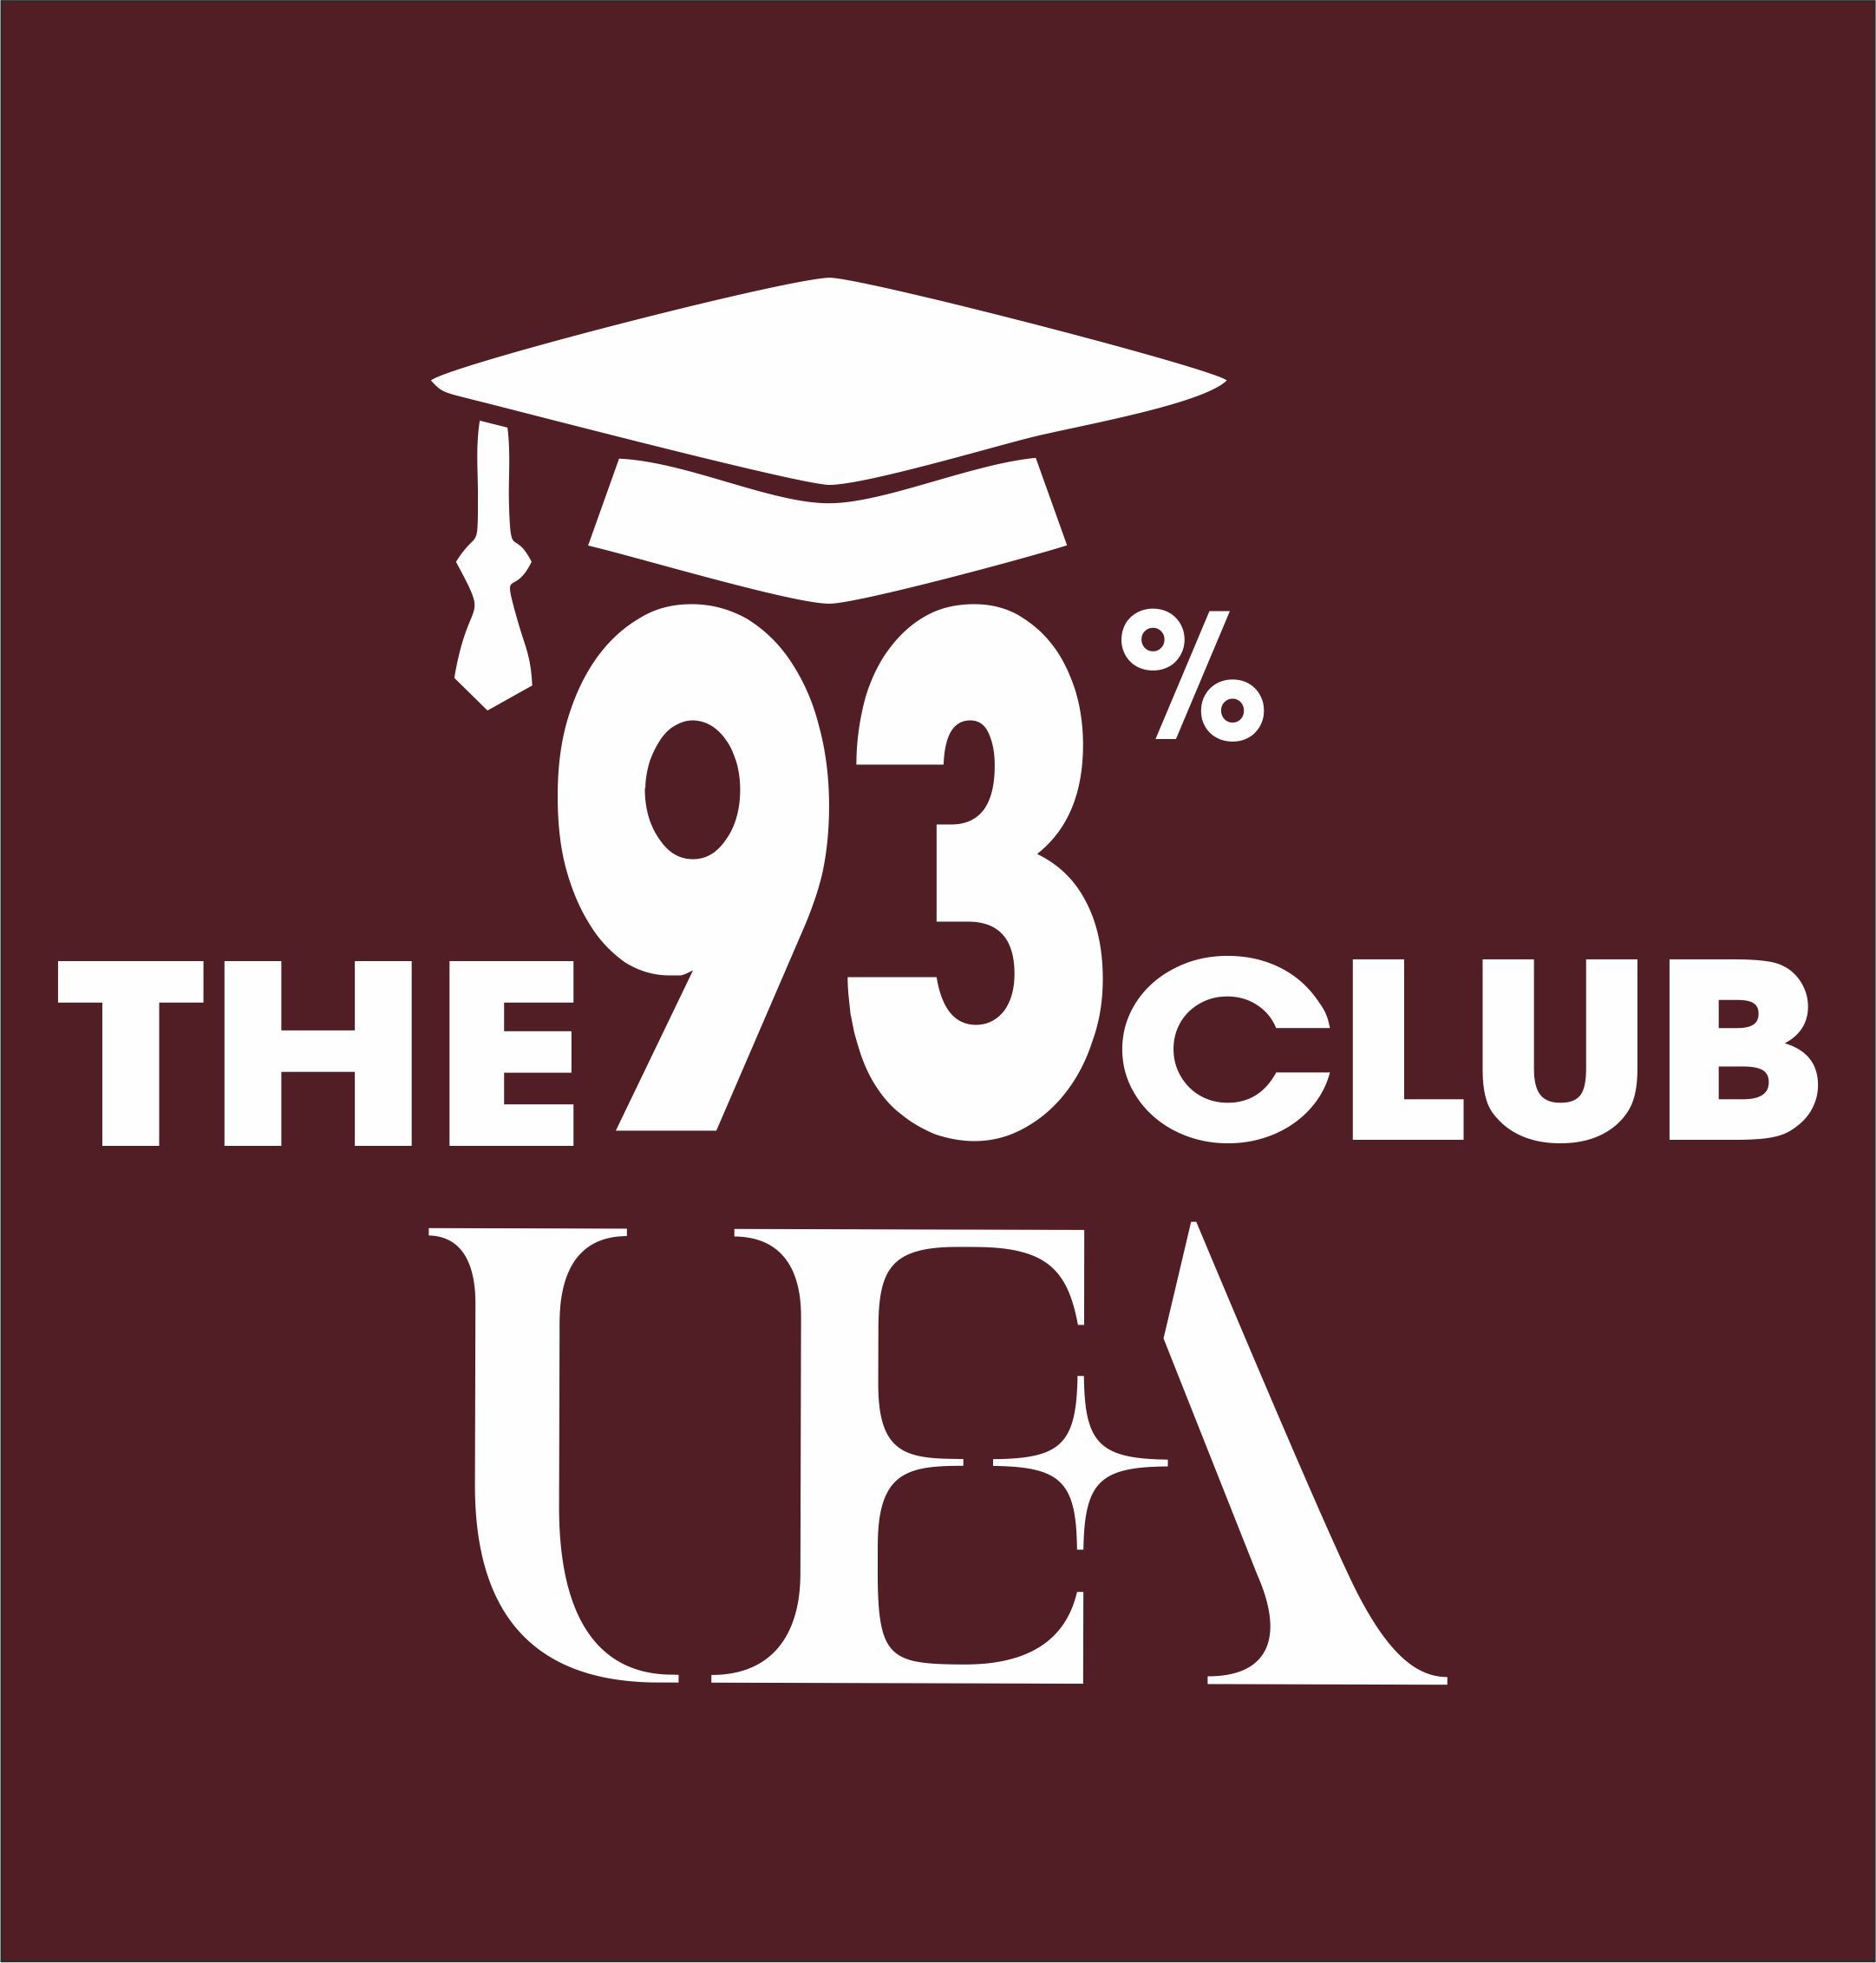 93 Club Logo